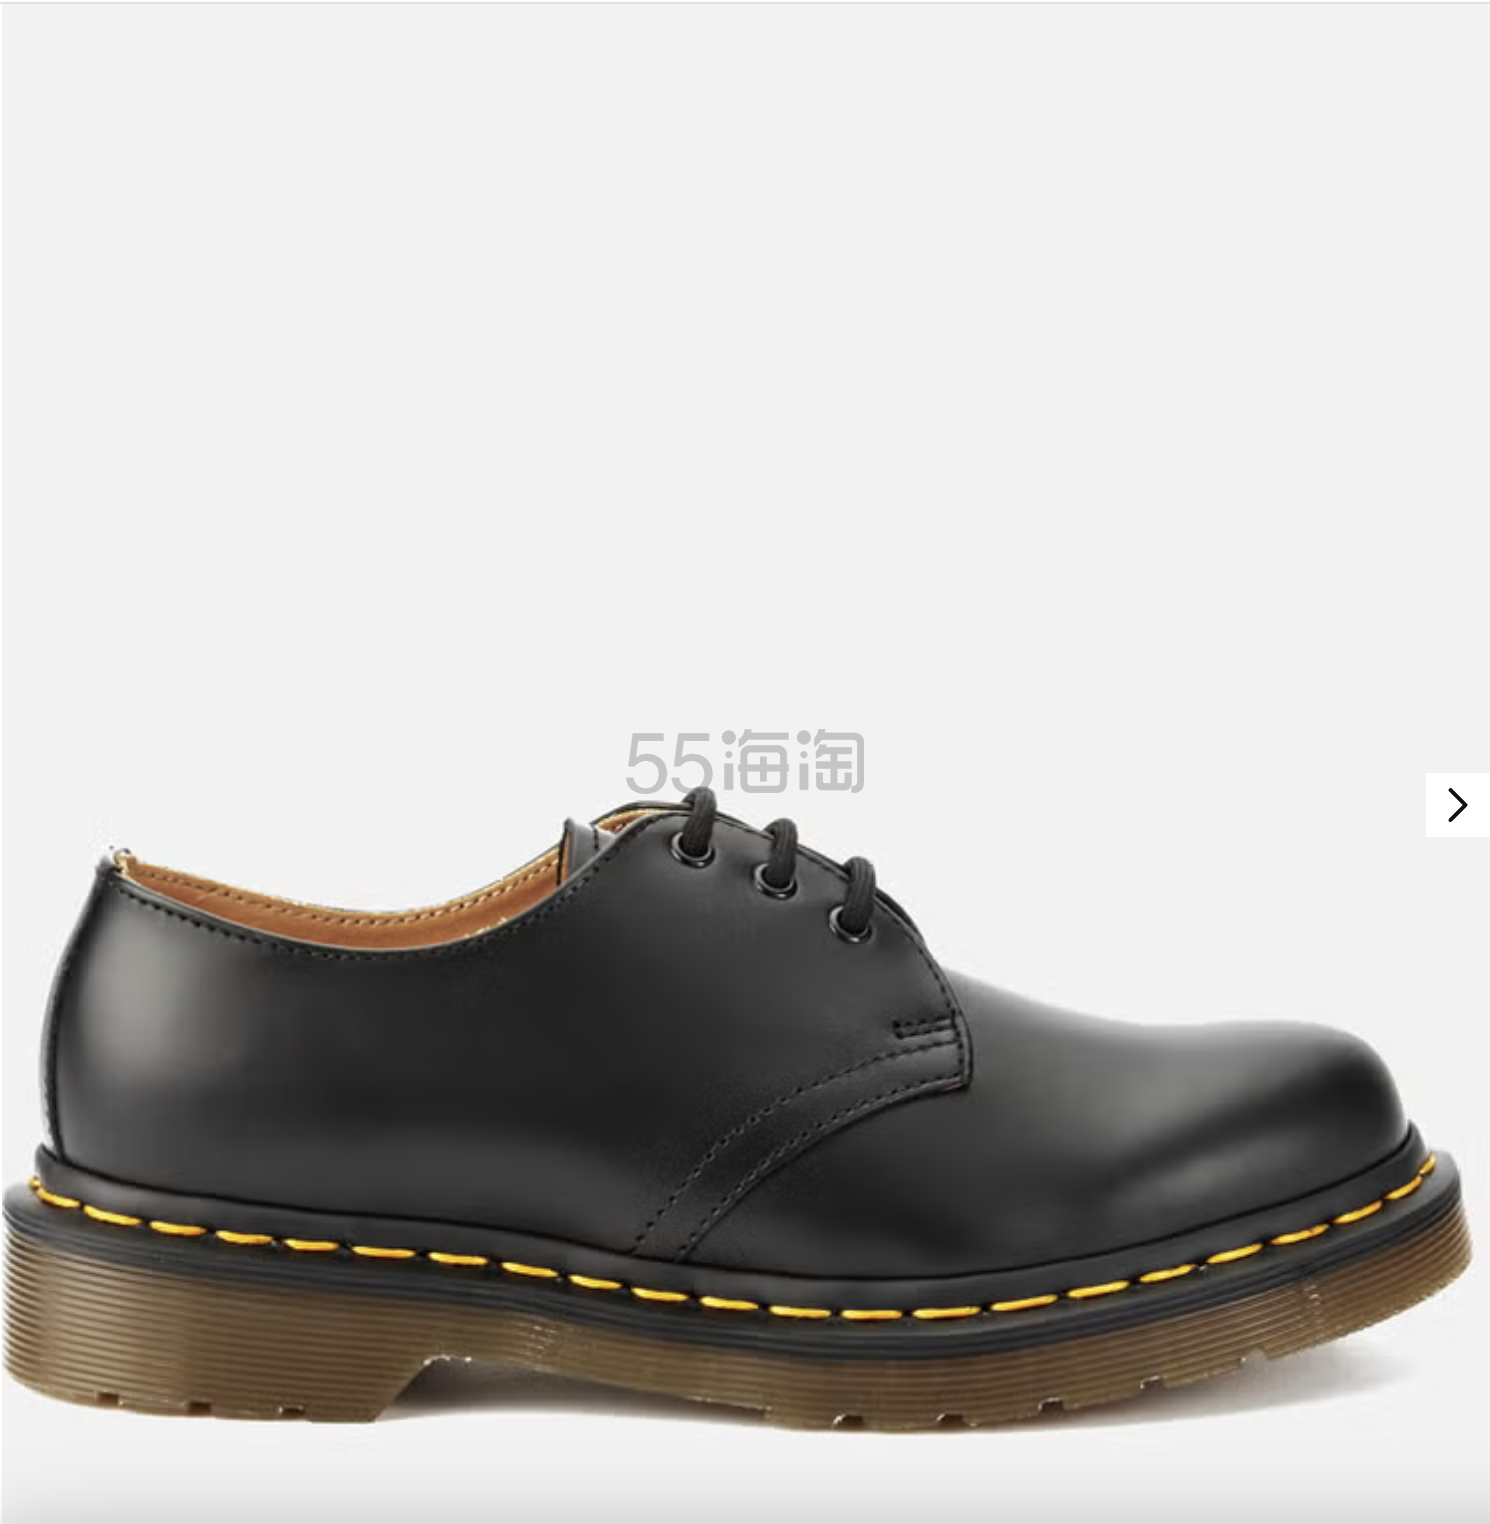 Allsole:Dr. Martens 1461 3孔马丁鞋